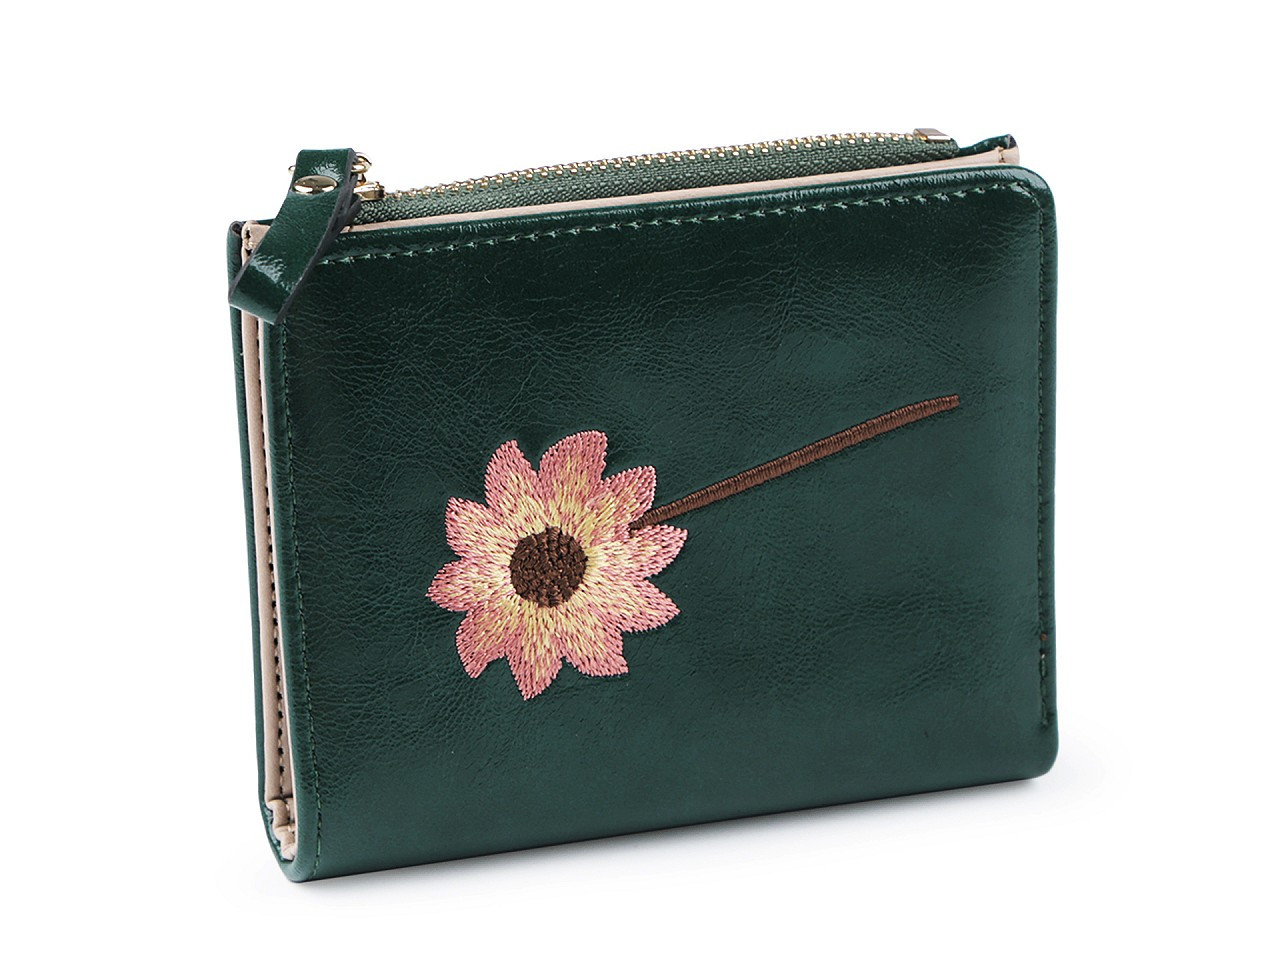 Dámská / dívčí peněženka s výšivkou 10x12 cm, barva 3 zelená jedle